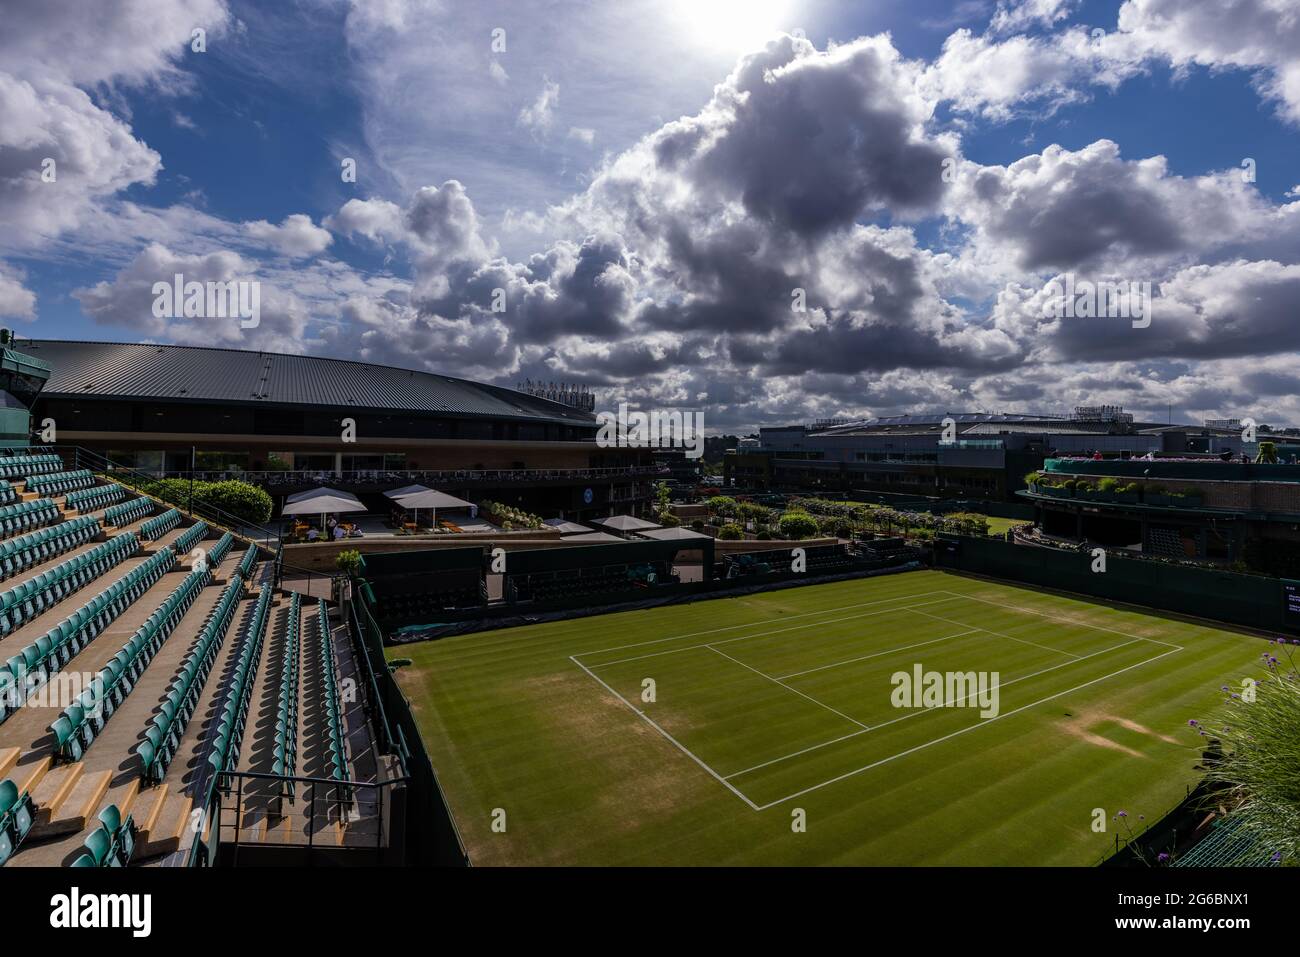 Vista generale dei campi prima del settimo giorno di Wimbledon presso l'All England Lawn Tennis and Croquet Club, Wimbledon. Data immagine: Lunedì 5 luglio 2021. Foto Stock